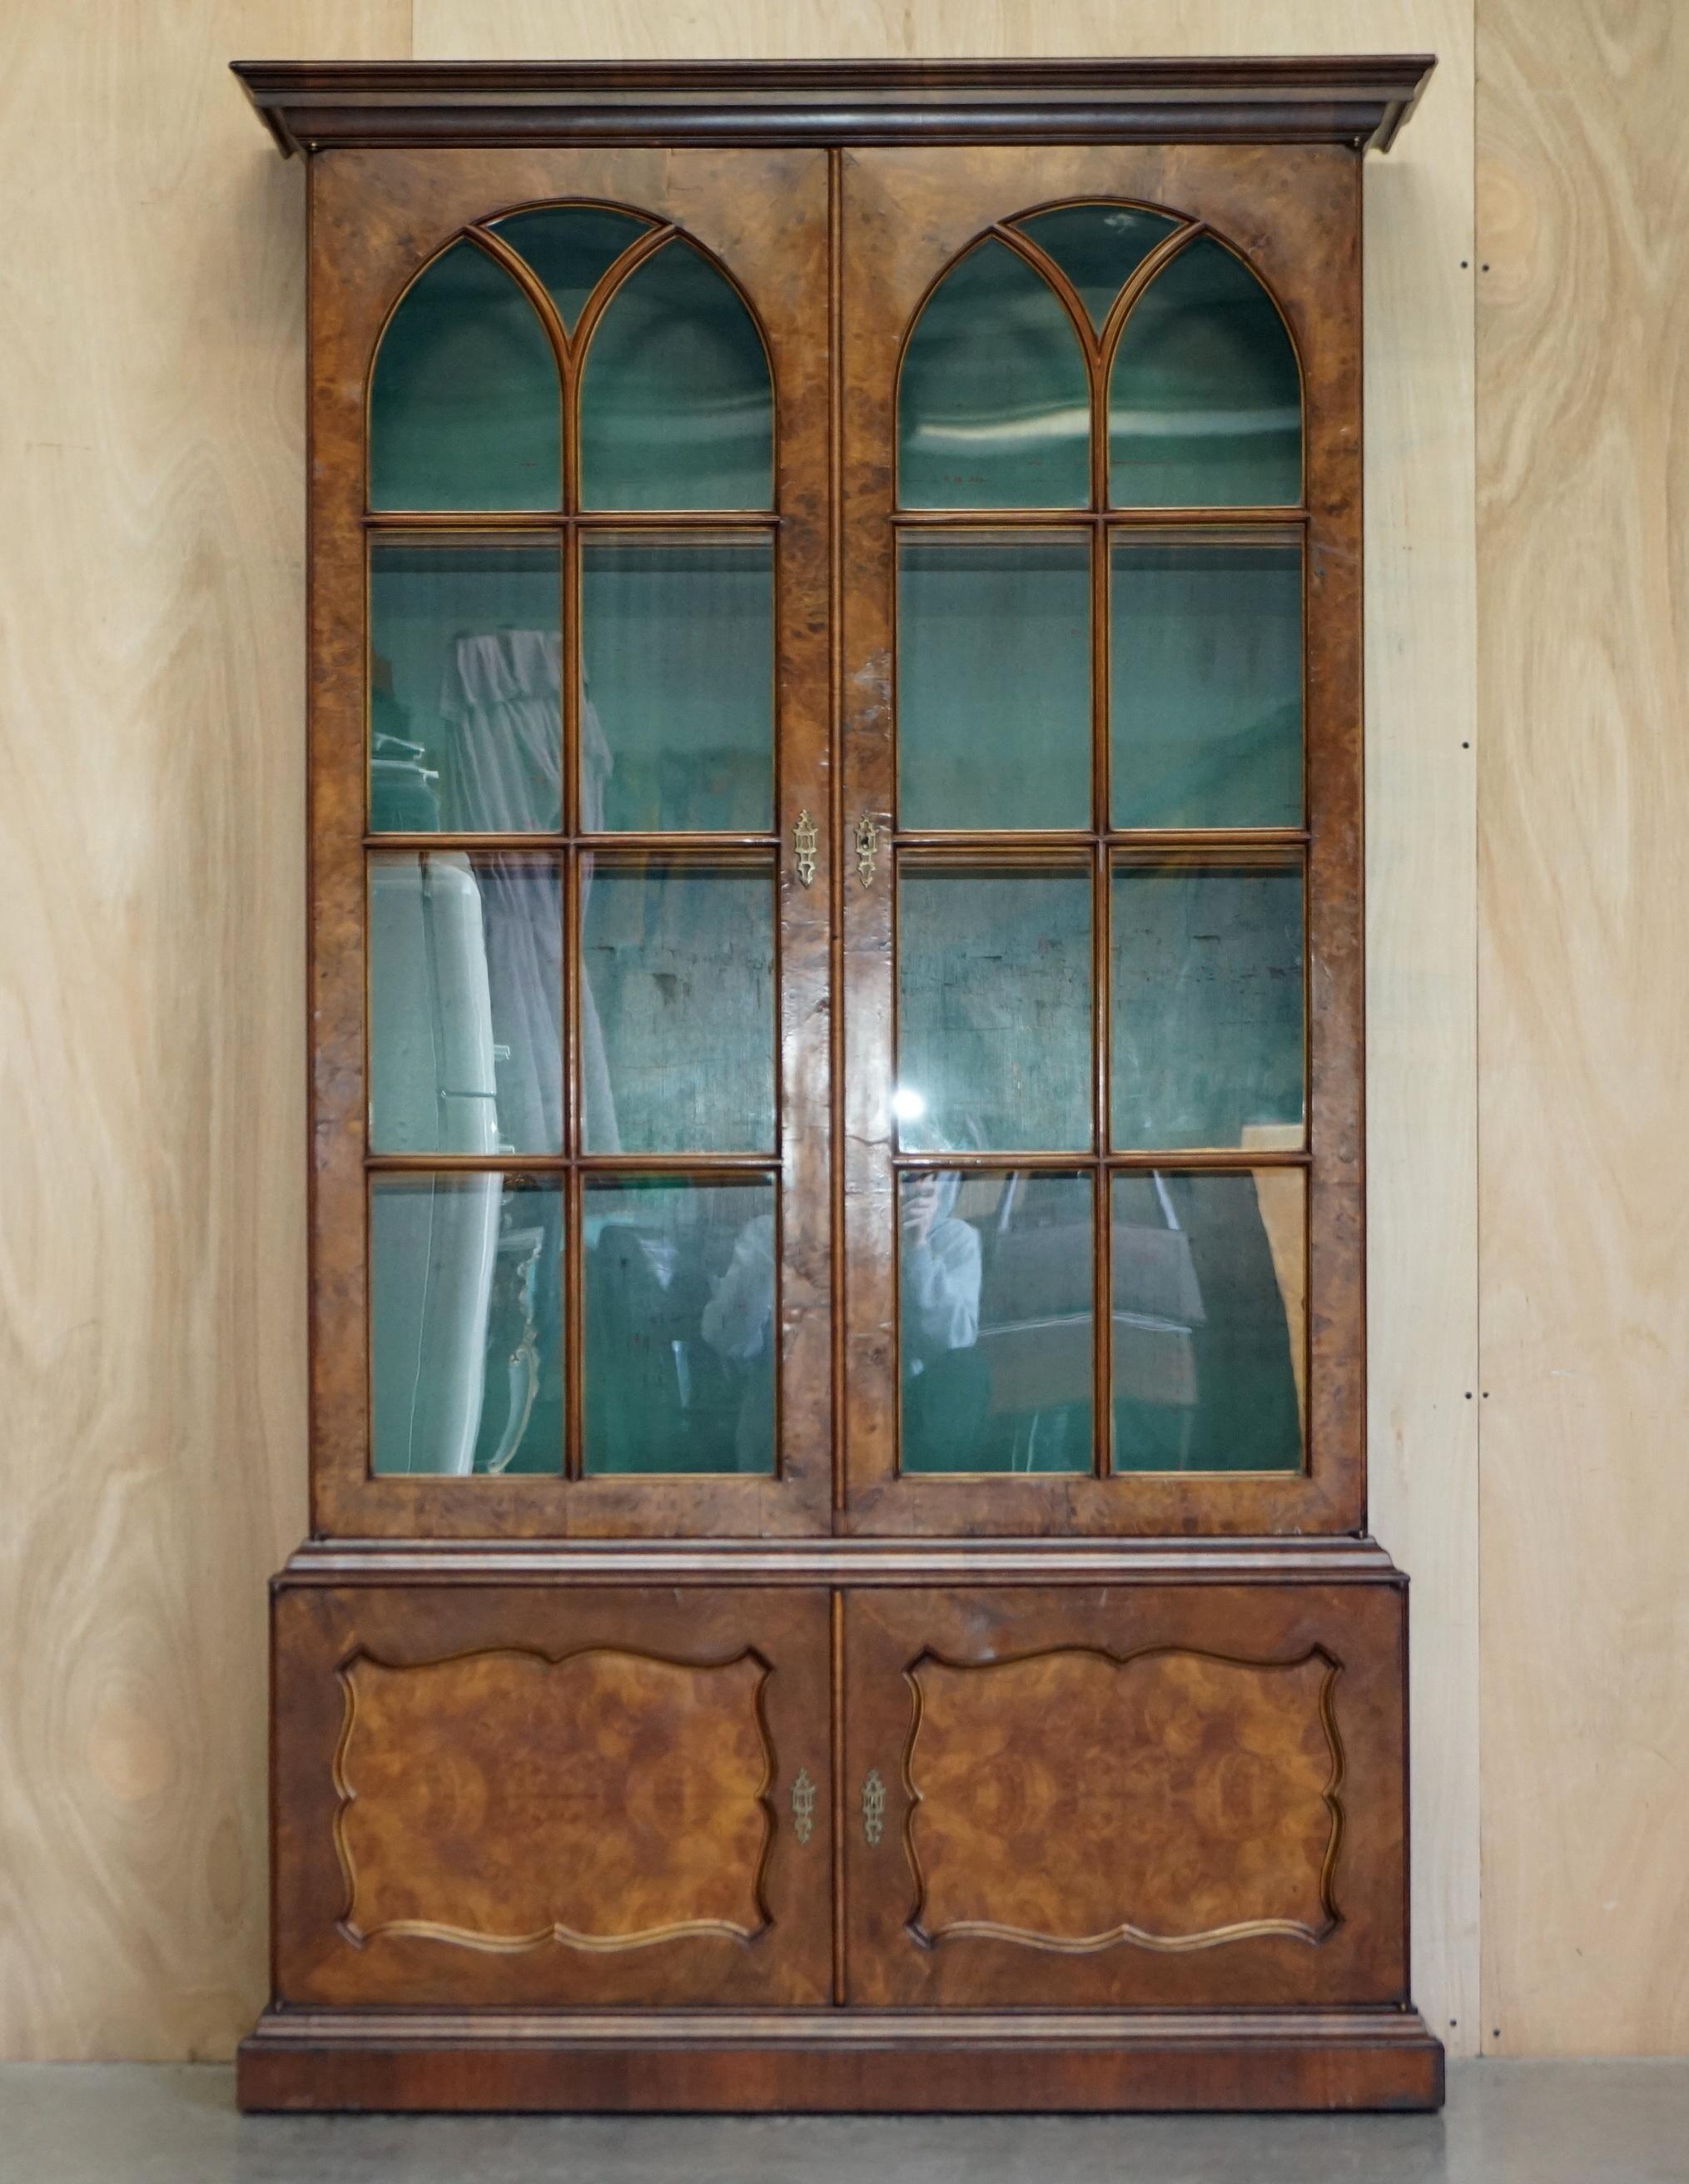 Wir freuen uns, diese erhabene circa 1880 antiken viktorianischen Gratnuss Bibliothek Bücherregal mit gotischen Stil verglasten Türen zum Verkauf anbieten.

Das Bücherregal ist exquisit, deigned für eine Bibliothek, aber natürlich kann es überall